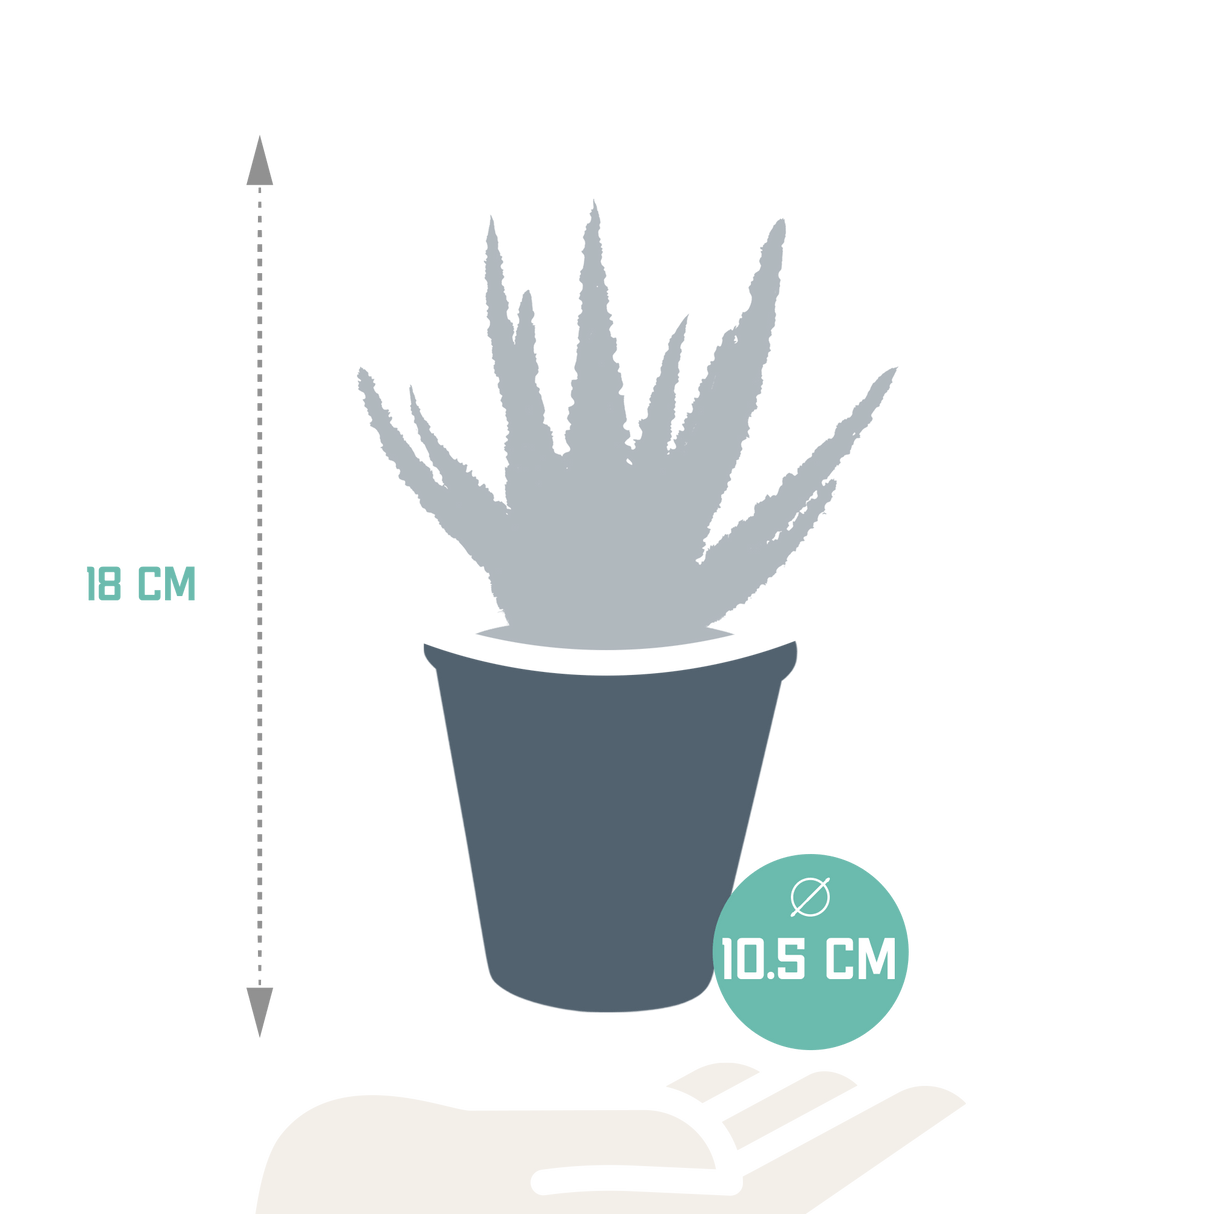 Livraison plante - Aloe Zebrina et son cache-pot terracotta - h18cm, Ø10,5cm - plante d'intérieur succulente